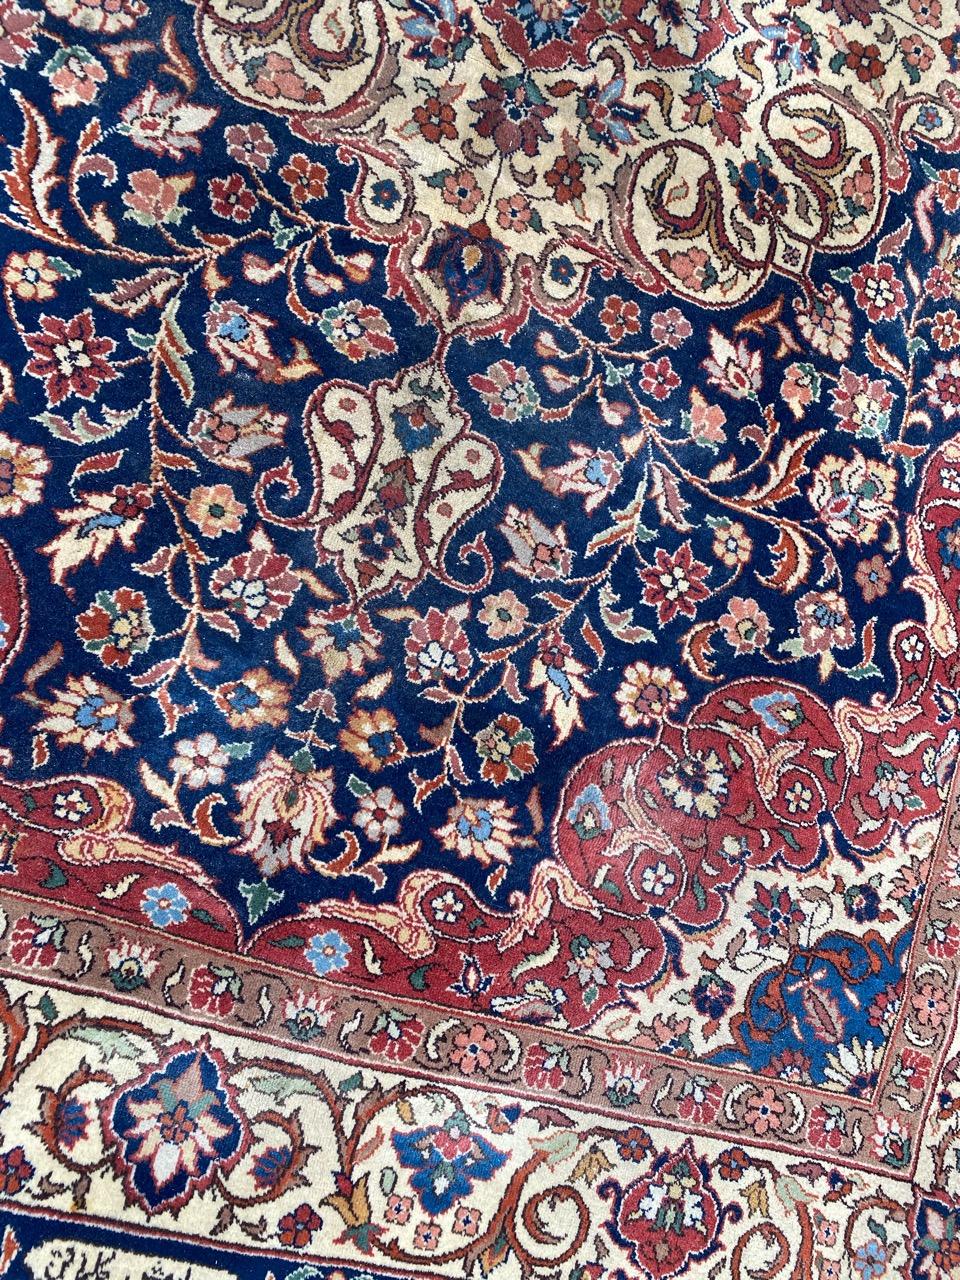 Hübscher transsilvanischer Vintage-Teppich mit schönem persischem Muster und schönen Farben, komplett handgeknüpft mit Wollsamt auf Baumwollgrund.